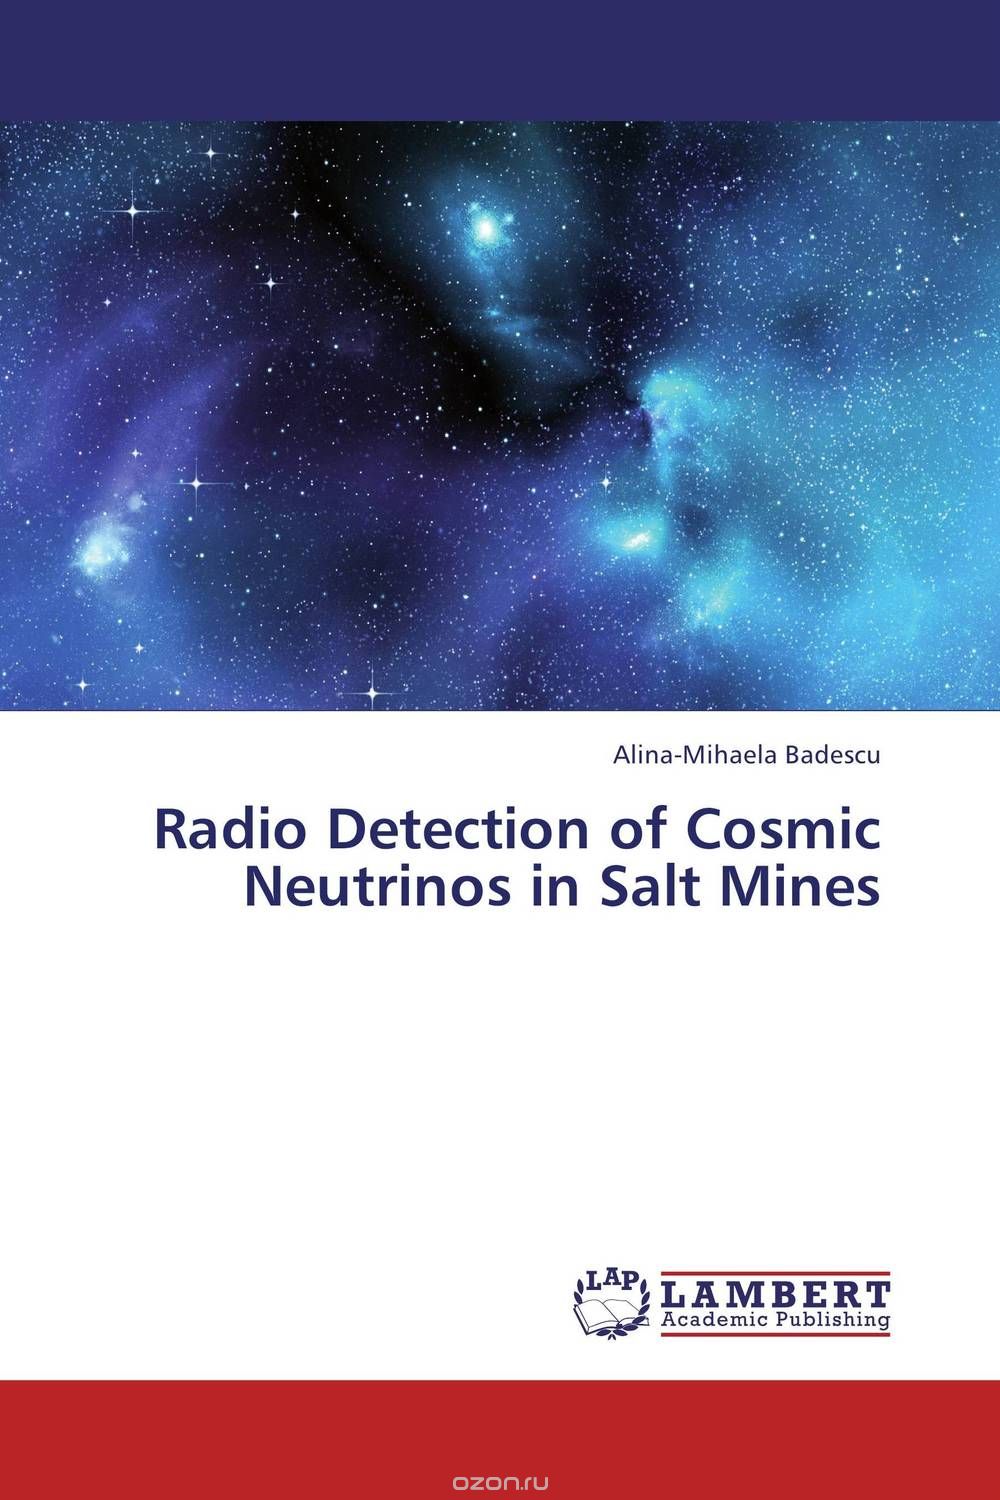 Скачать книгу "Radio Detection of Cosmic Neutrinos in Salt Mines"